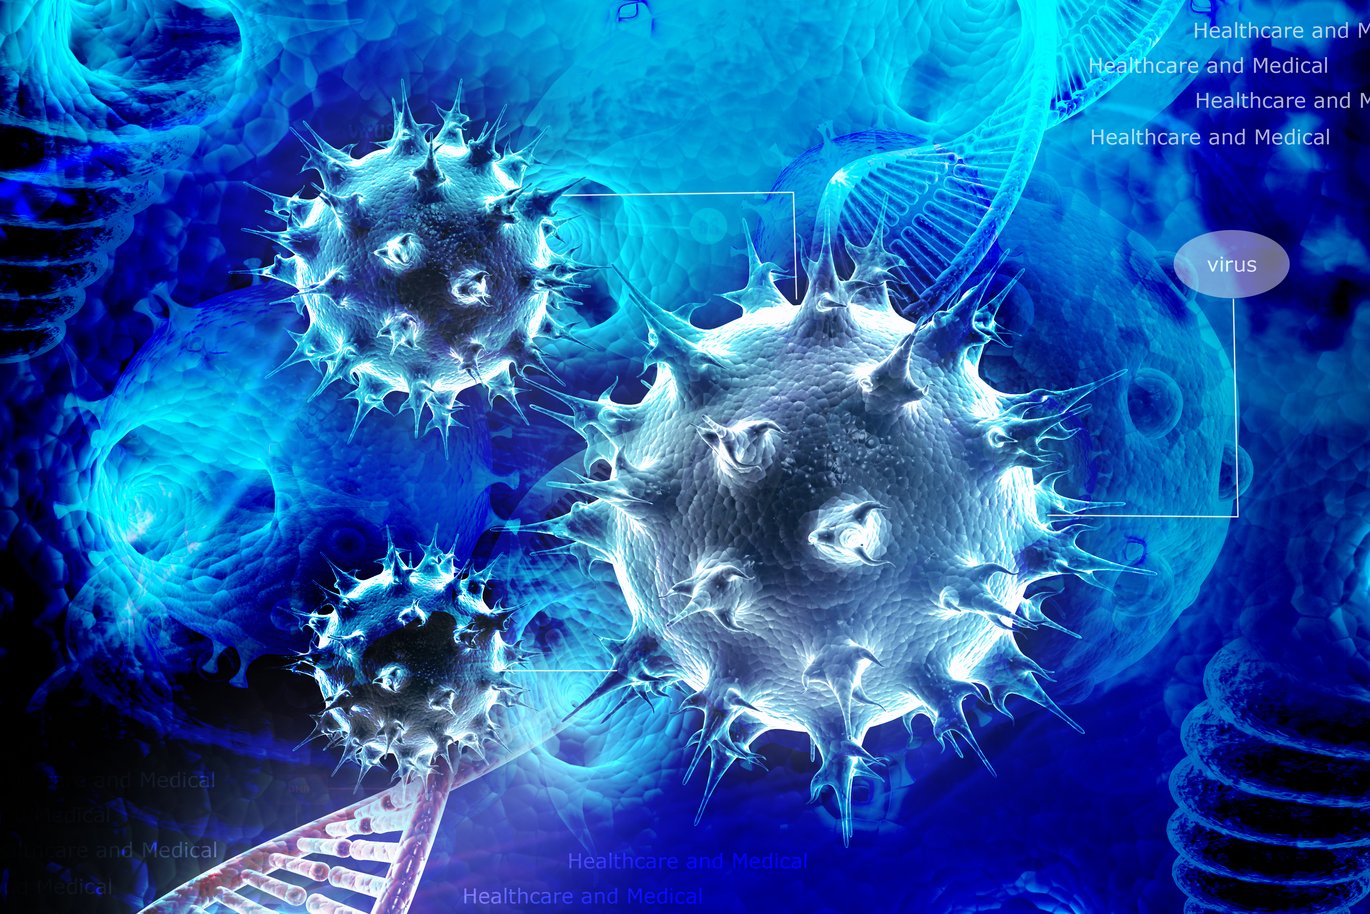 Forskere fra Institut for Biomedicin står bag et af de ti nominerede forskningsresultater. De har vist, hvordan immunsystemet bliver aktiveret, så det nedbryder bakterier.